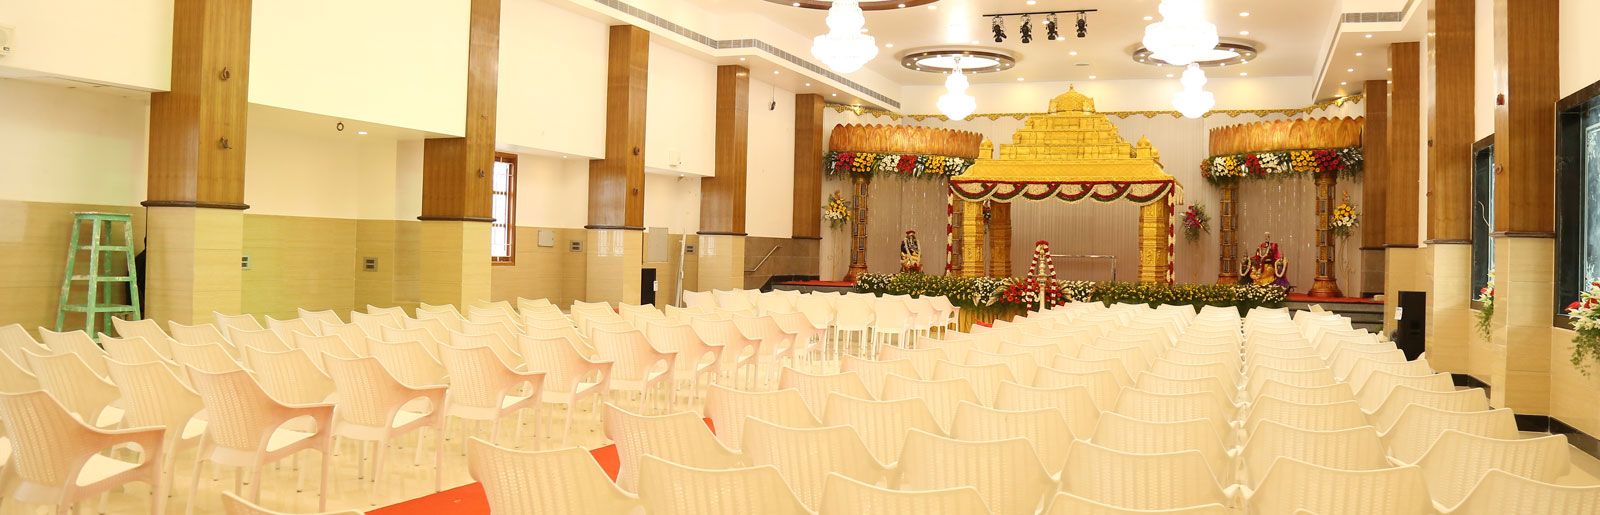 AC-Reception-Hall-in-Chennai